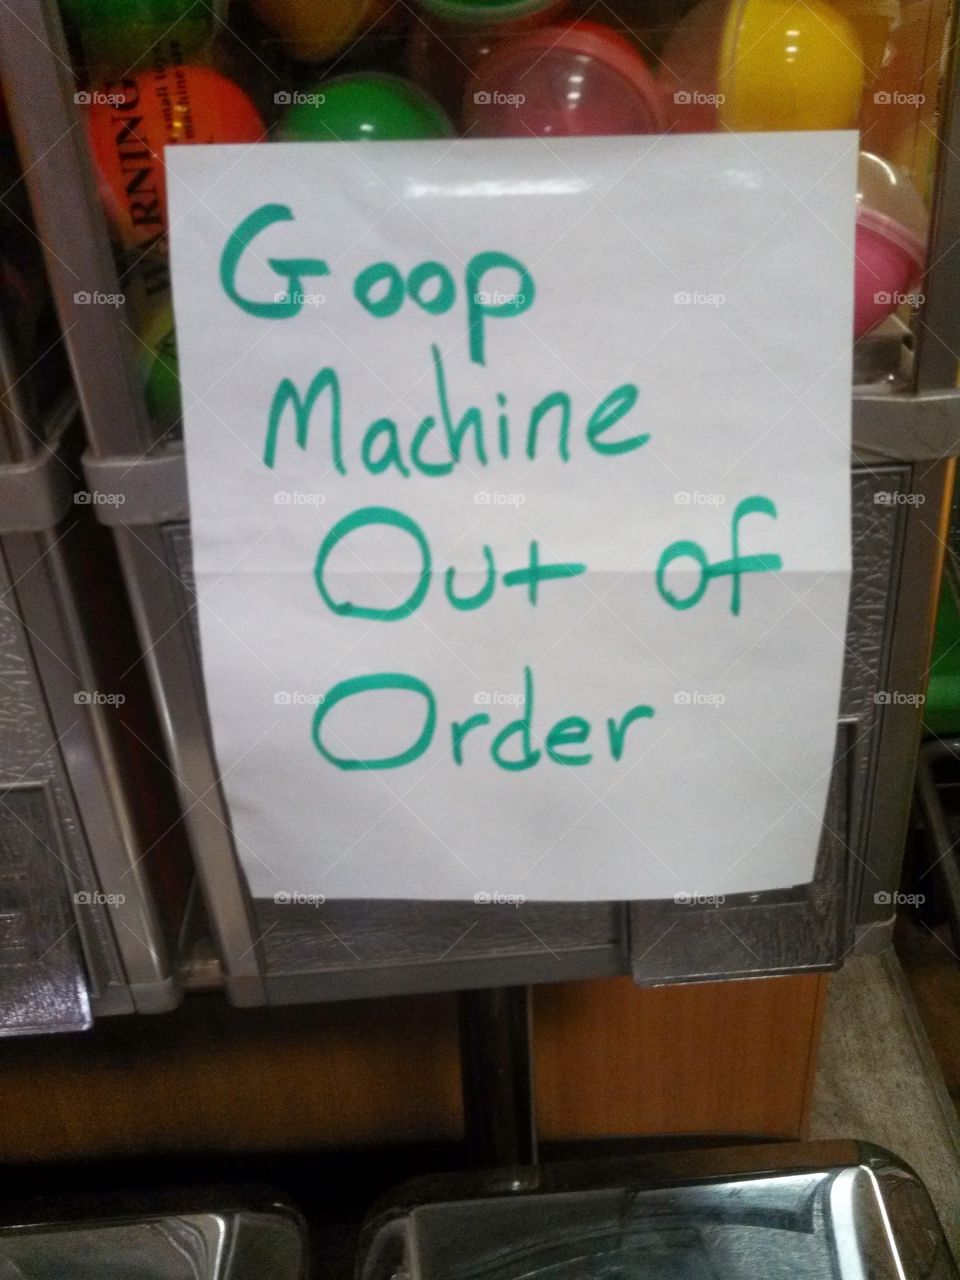 Goop machine